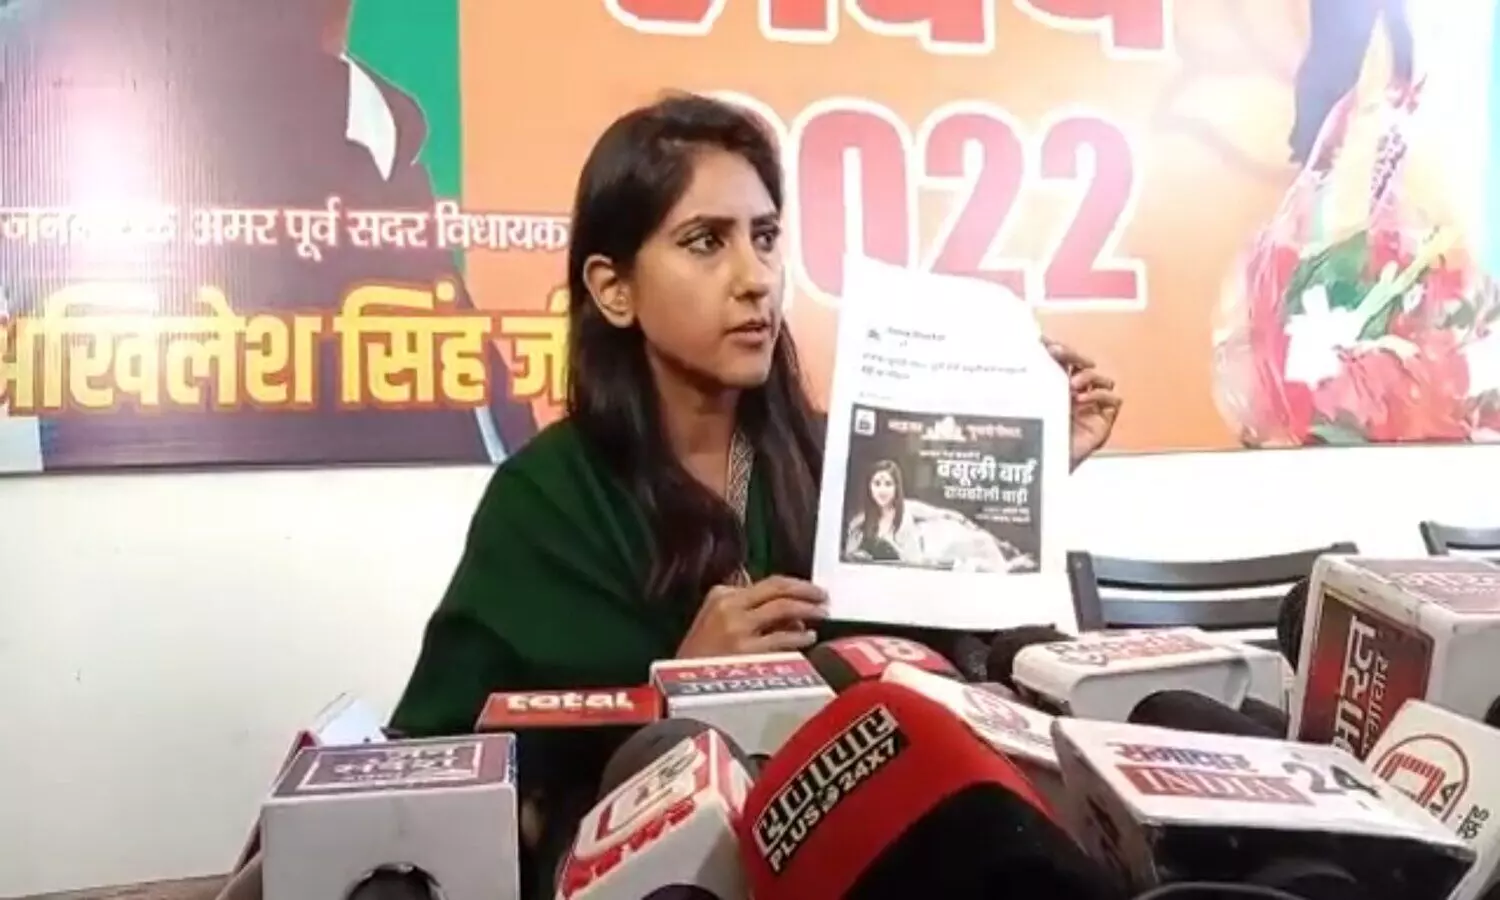 UP Election 2022: आपत्तिजनक विज्ञापन पर भड़कीं भाजपा प्रत्याशी अदिति सिंह, कांग्रेस पर लगाए गंभीर आरोप